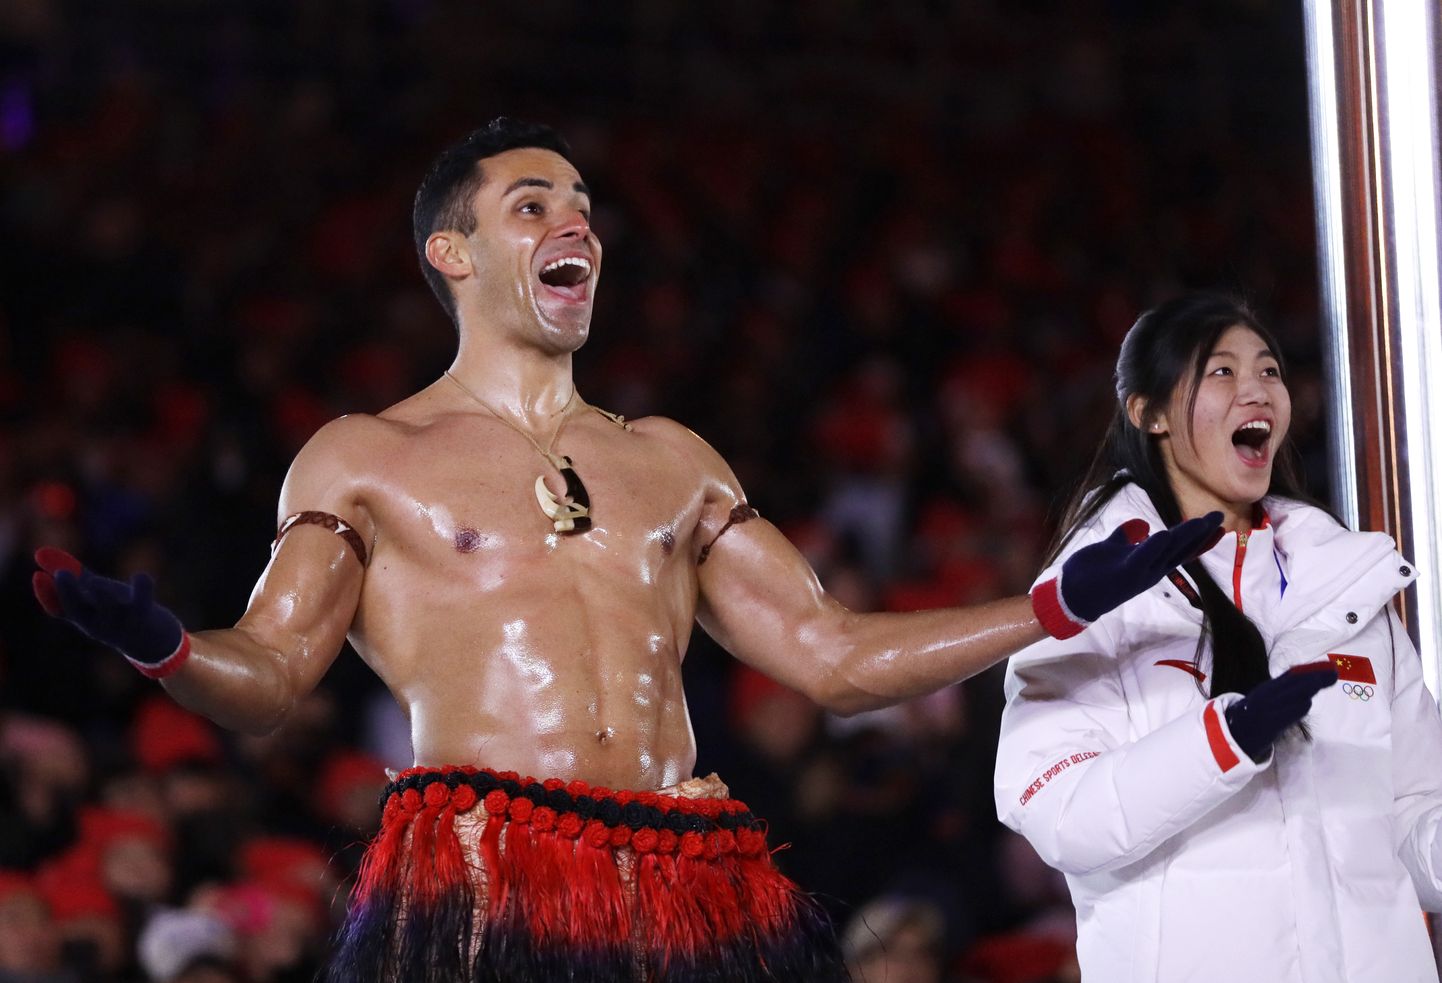 Tonga kõige kuulsam sportlane on kahtlemata Pita Taufatofua, kes viskas särgi oma õlitatud kehalt nii Rio de Janeiro kui ka Pyeongchangi olümpiamängudel.